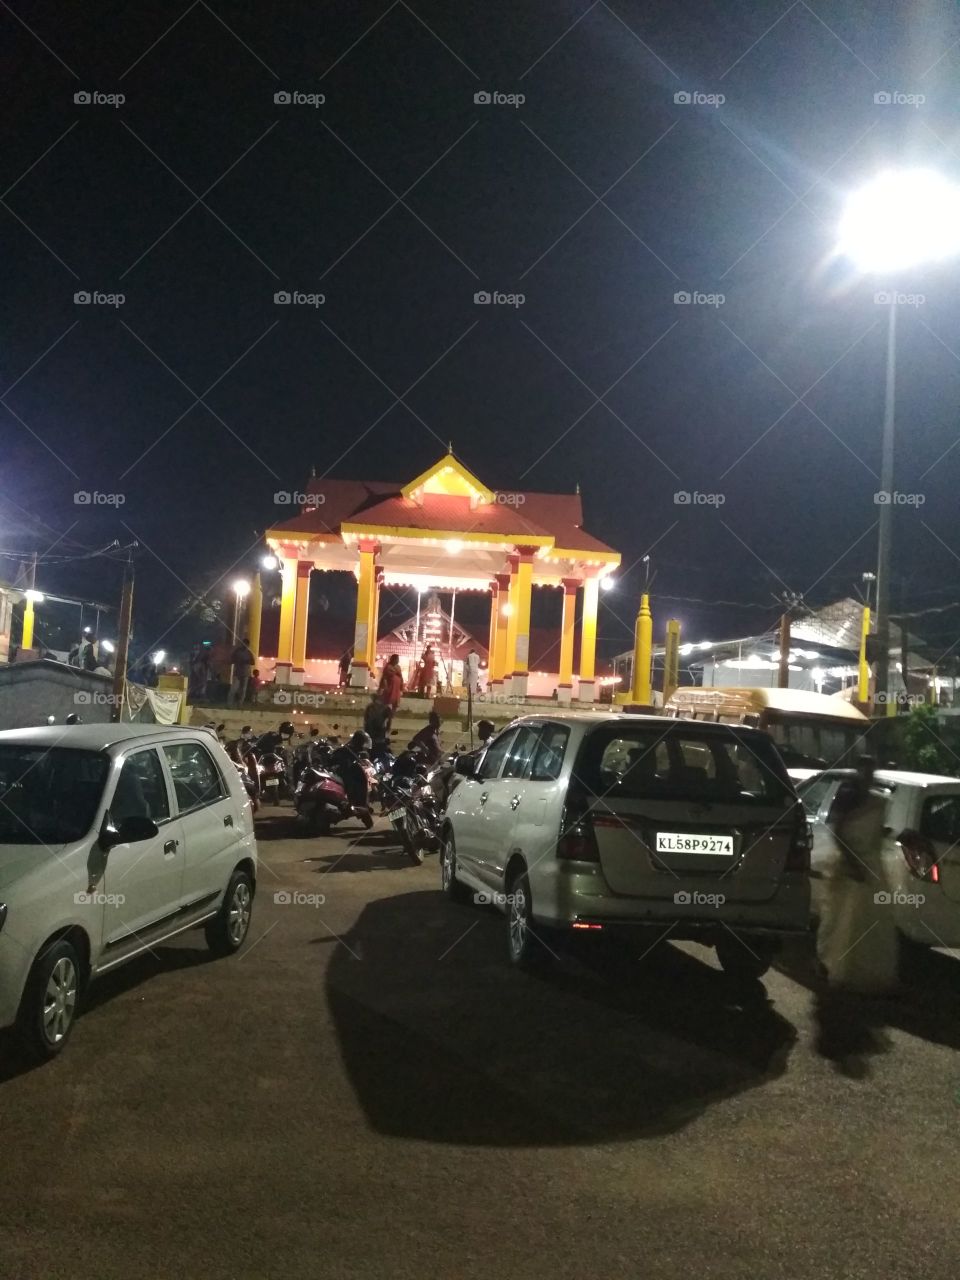 Jagannath temple
Jagannath temple